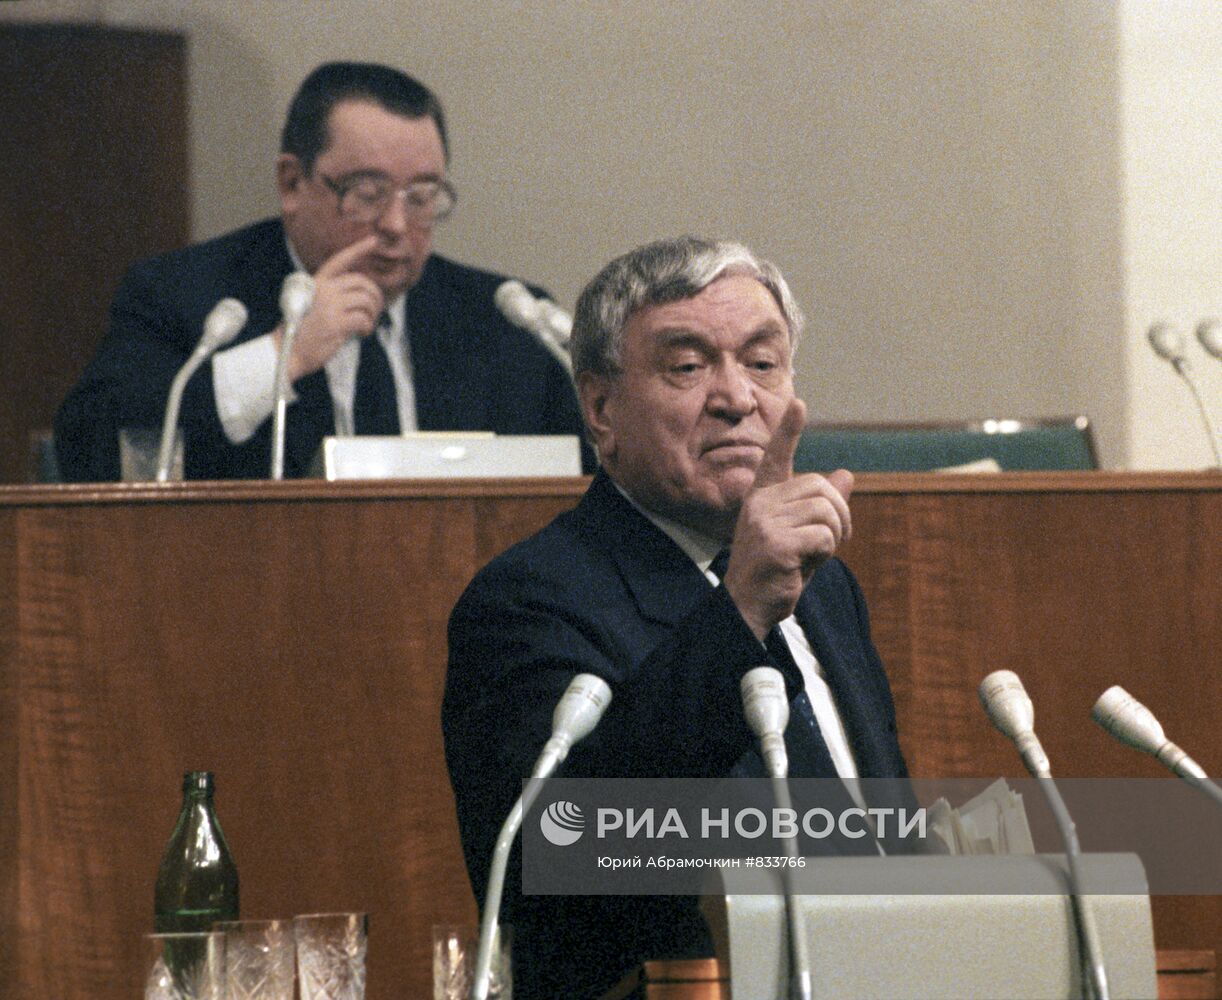 Встреча с членами кабинета министров СССР